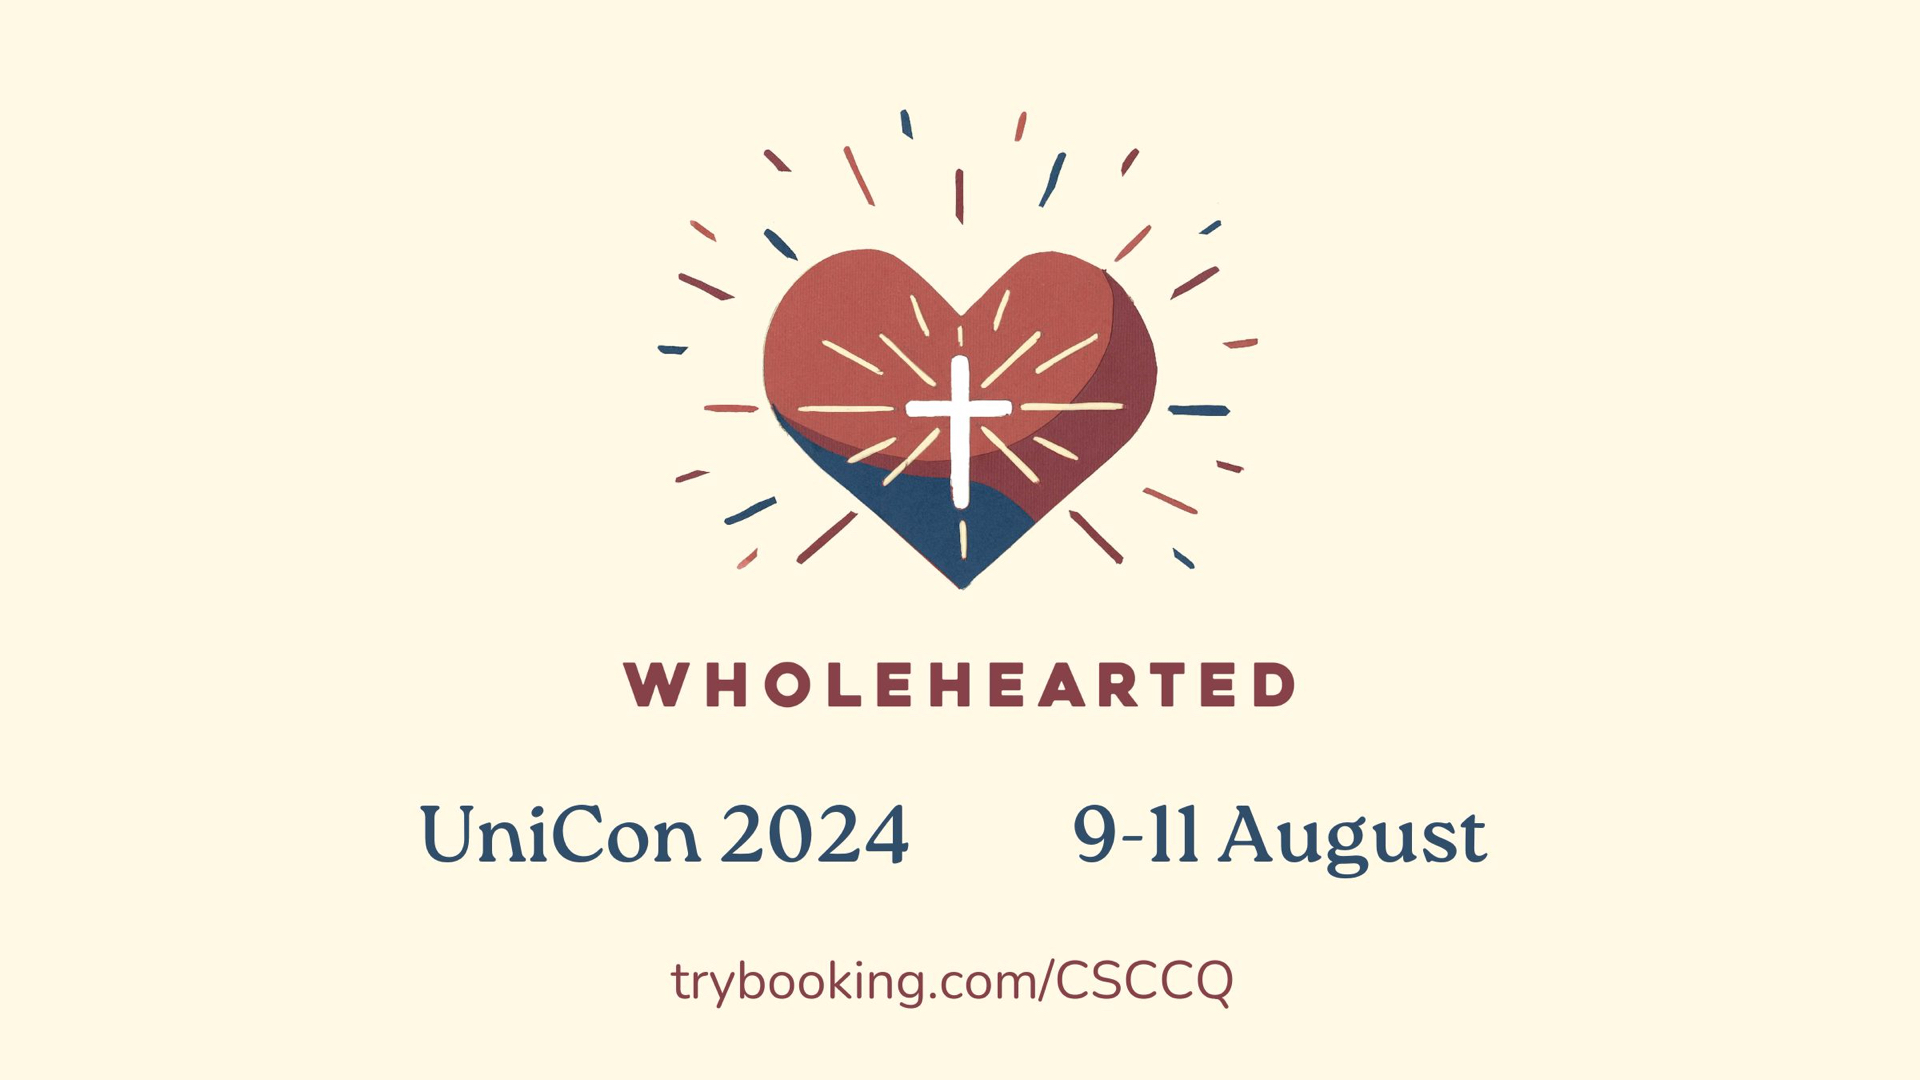 UniCon 2024: Wholehearted